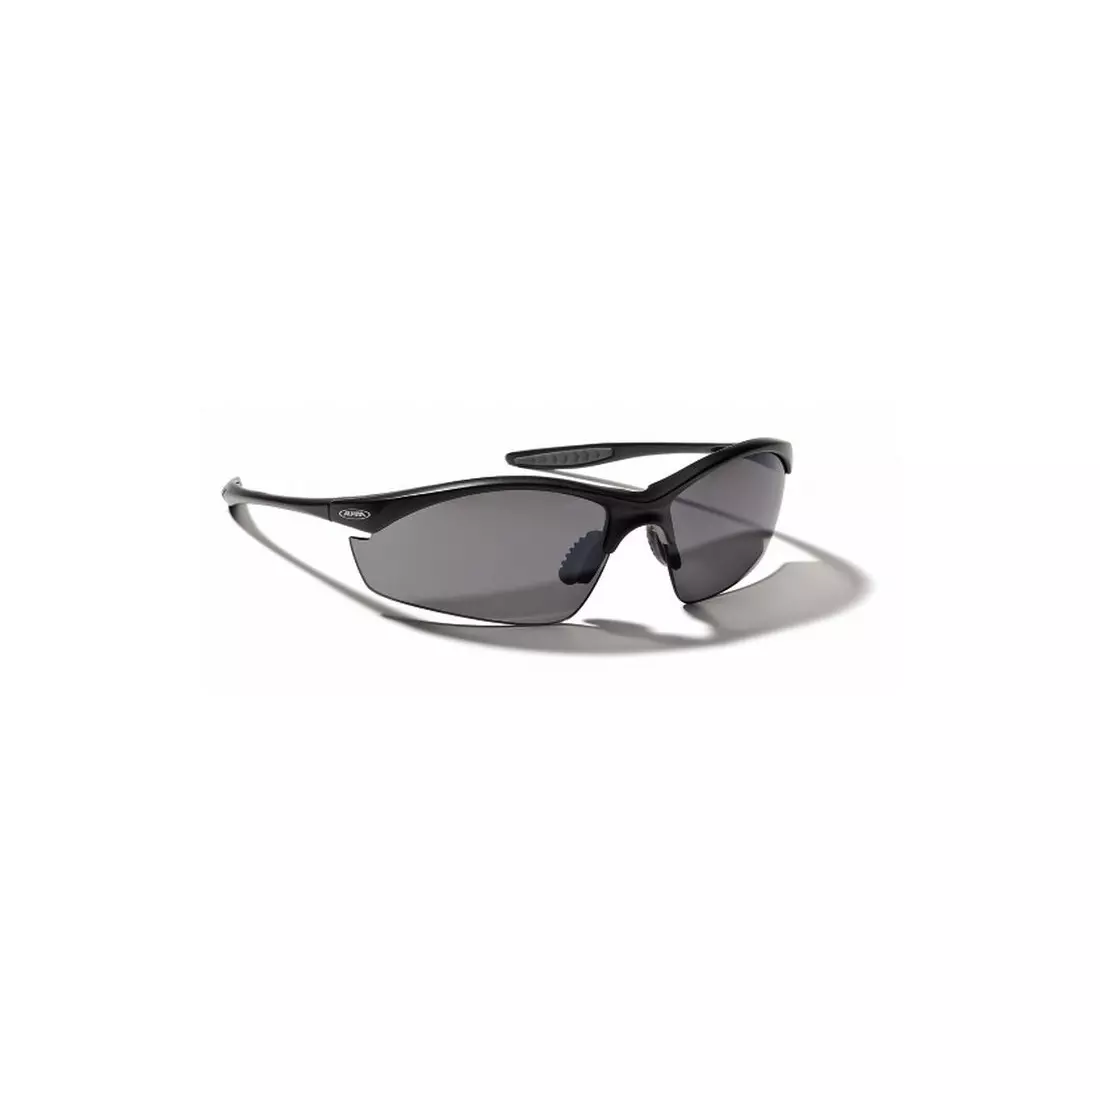 ALPINA TRI-EFFECT sports glasses - color: Black